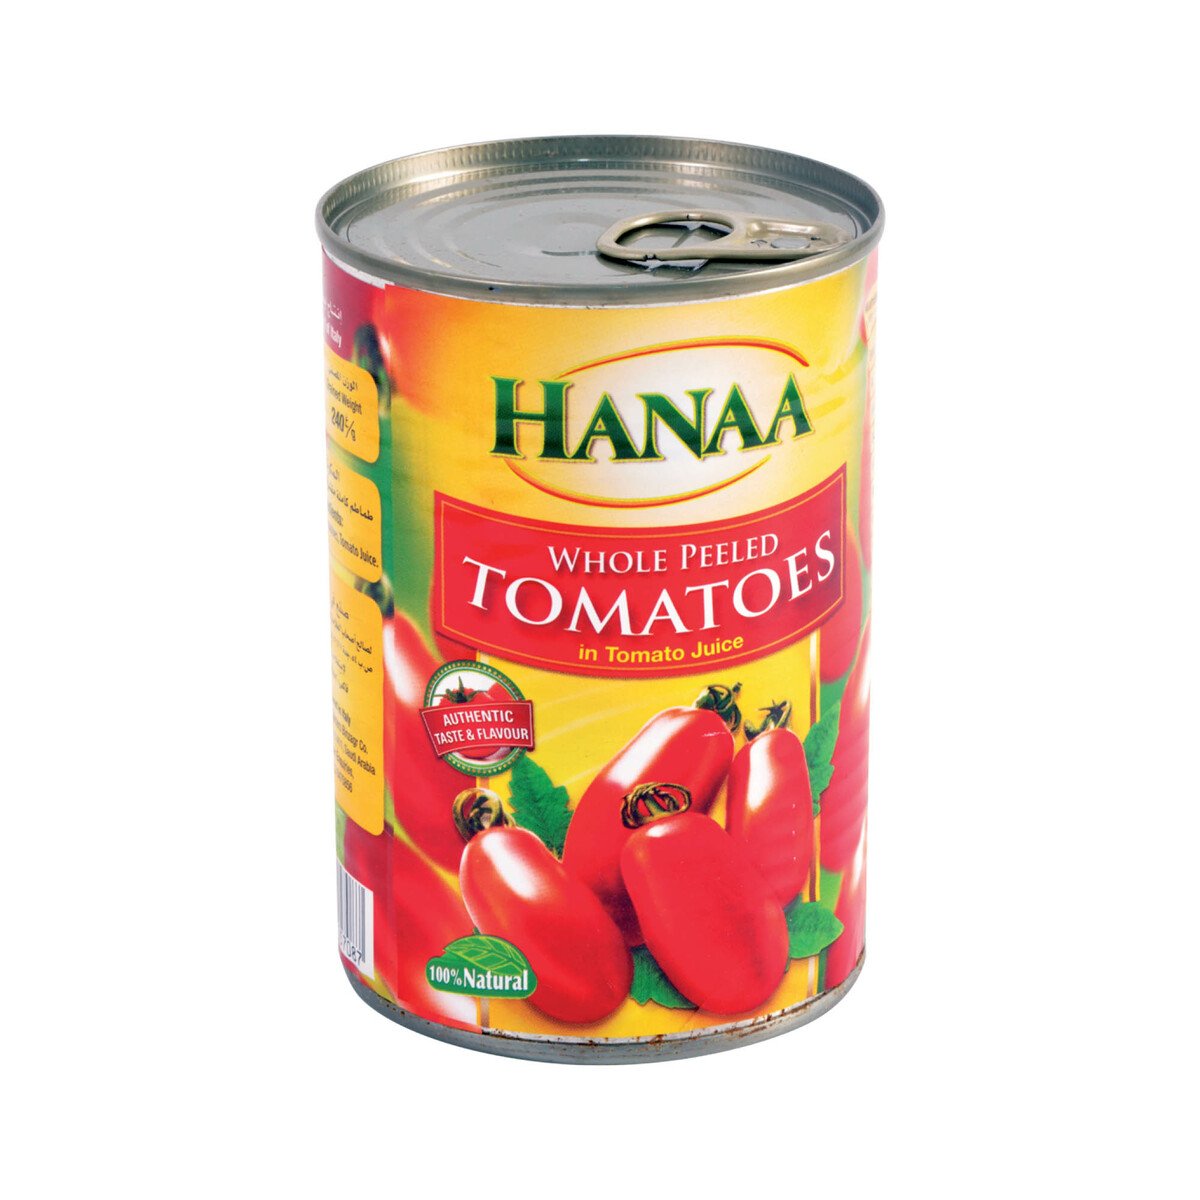 اشتري قم بشراء هناء طماطم مقشرة كاملة 400 جم Online at Best Price من الموقع - من لولو هايبر ماركت Cand Tomatoes&Puree في السعودية